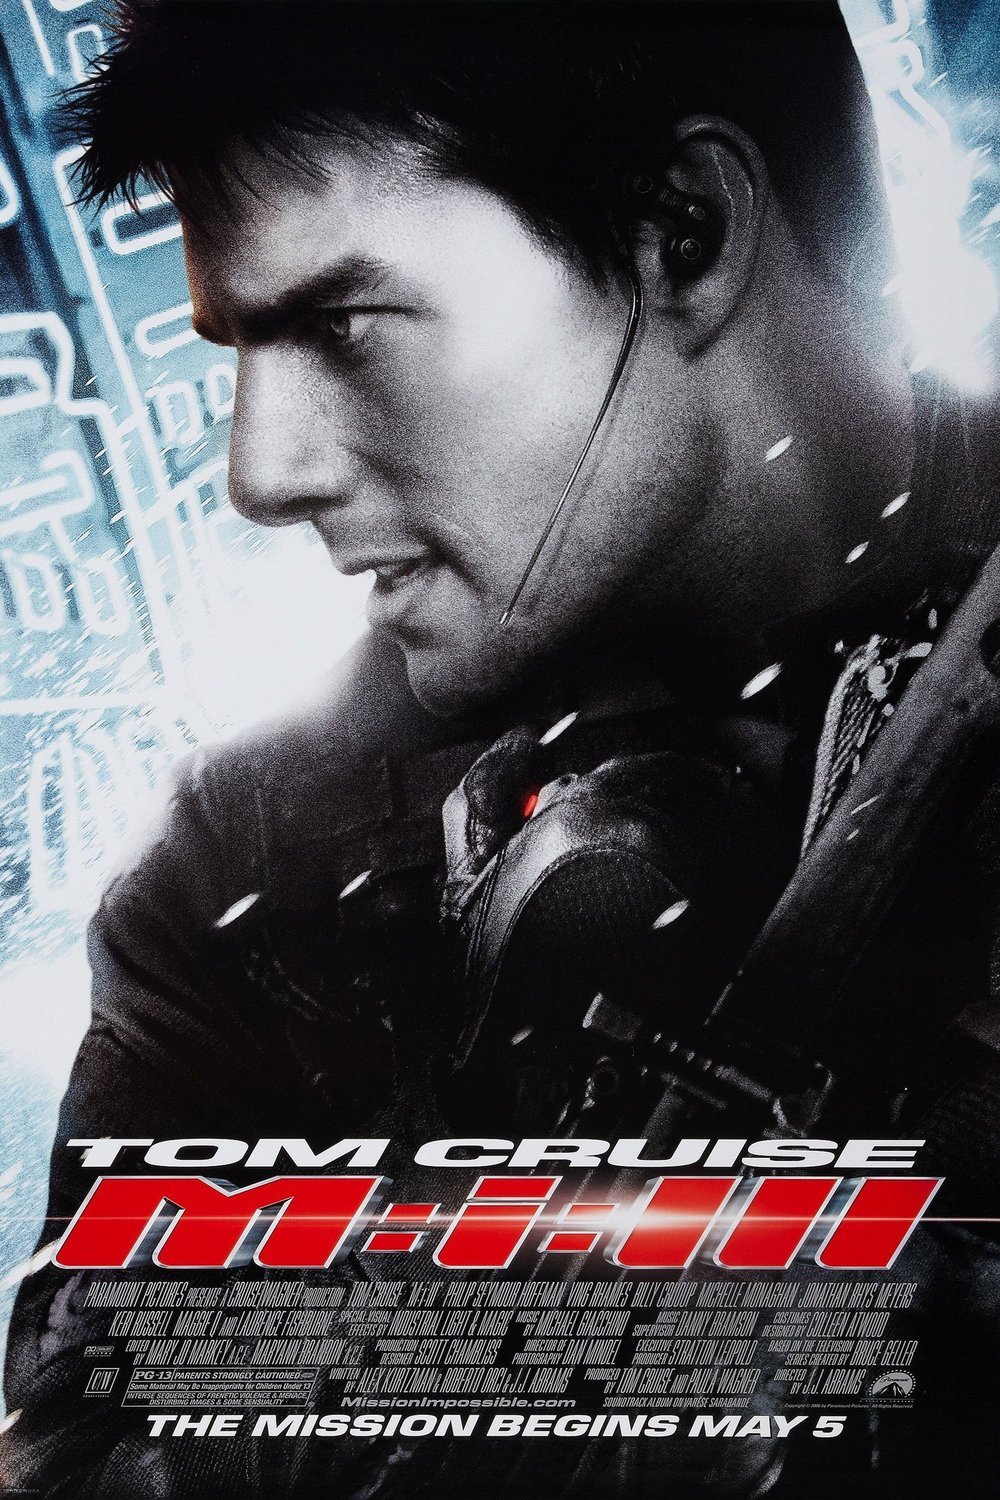 L'affiche du film Mission: Impossible 3 v.f.